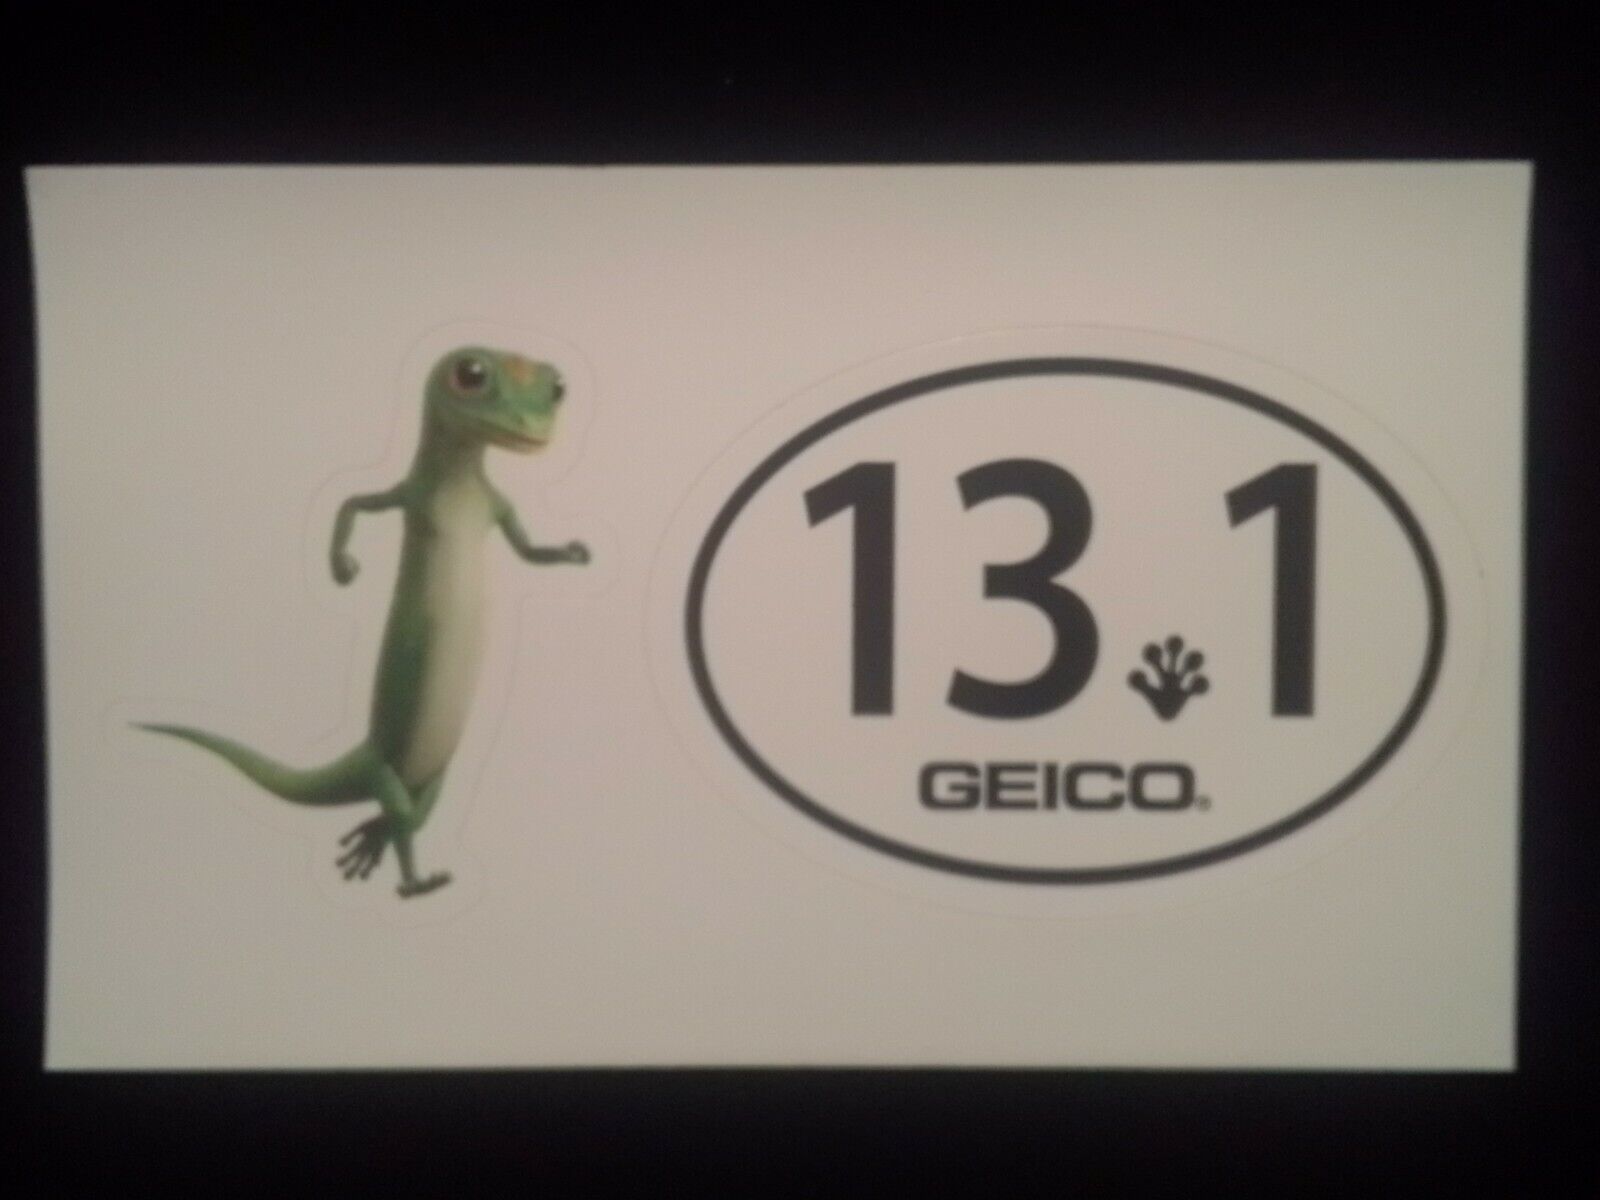 (1) Geico Gecko Sticker Lizard Running & (1) Half Marathon 13.1 Geico Sticker